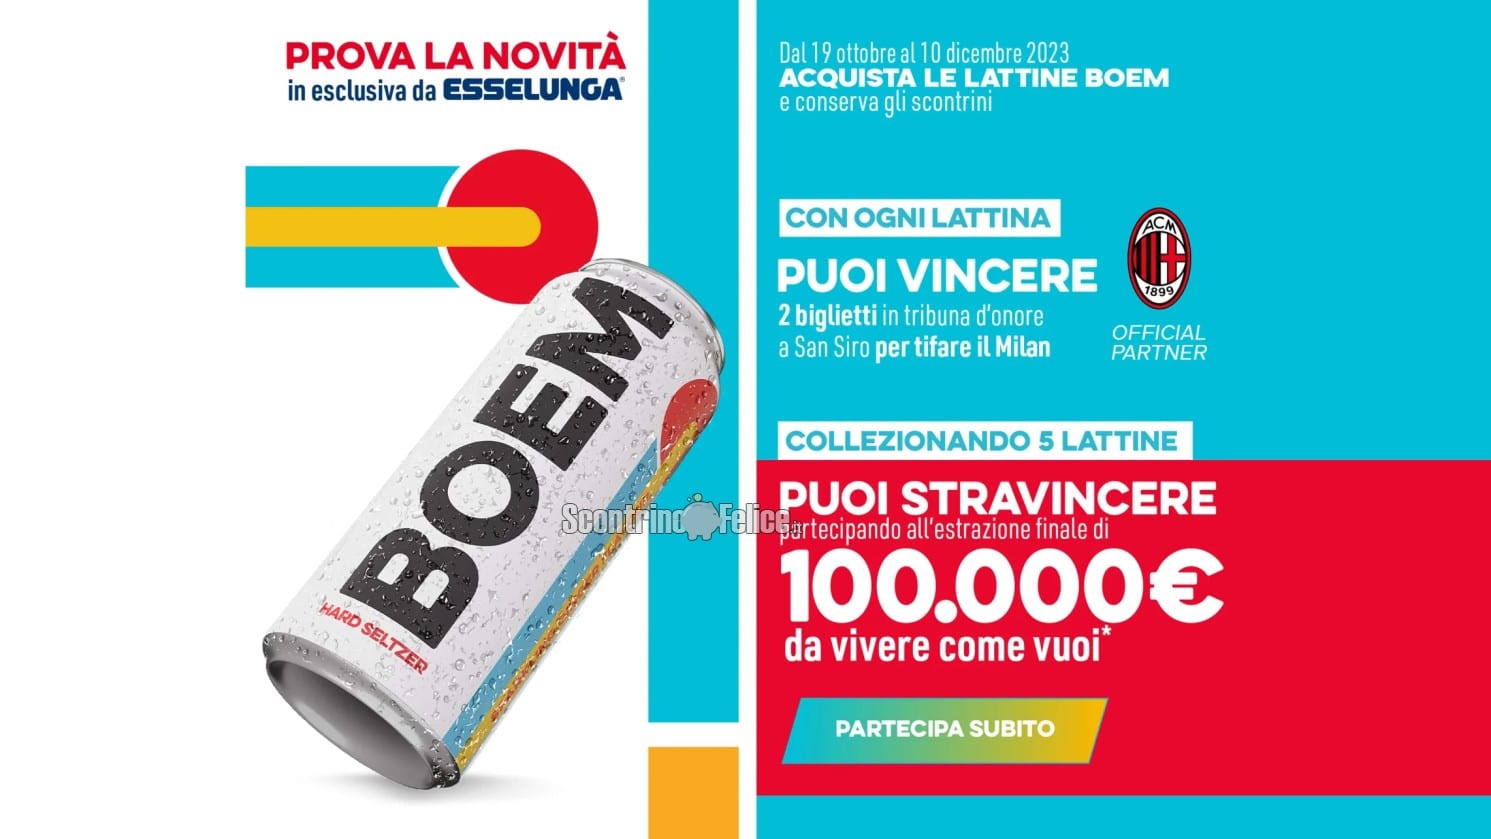 Concorso Boem da Esselunga: vinci la tribuna d'onore Milan e 100.000 euro da spendere come vuoi!